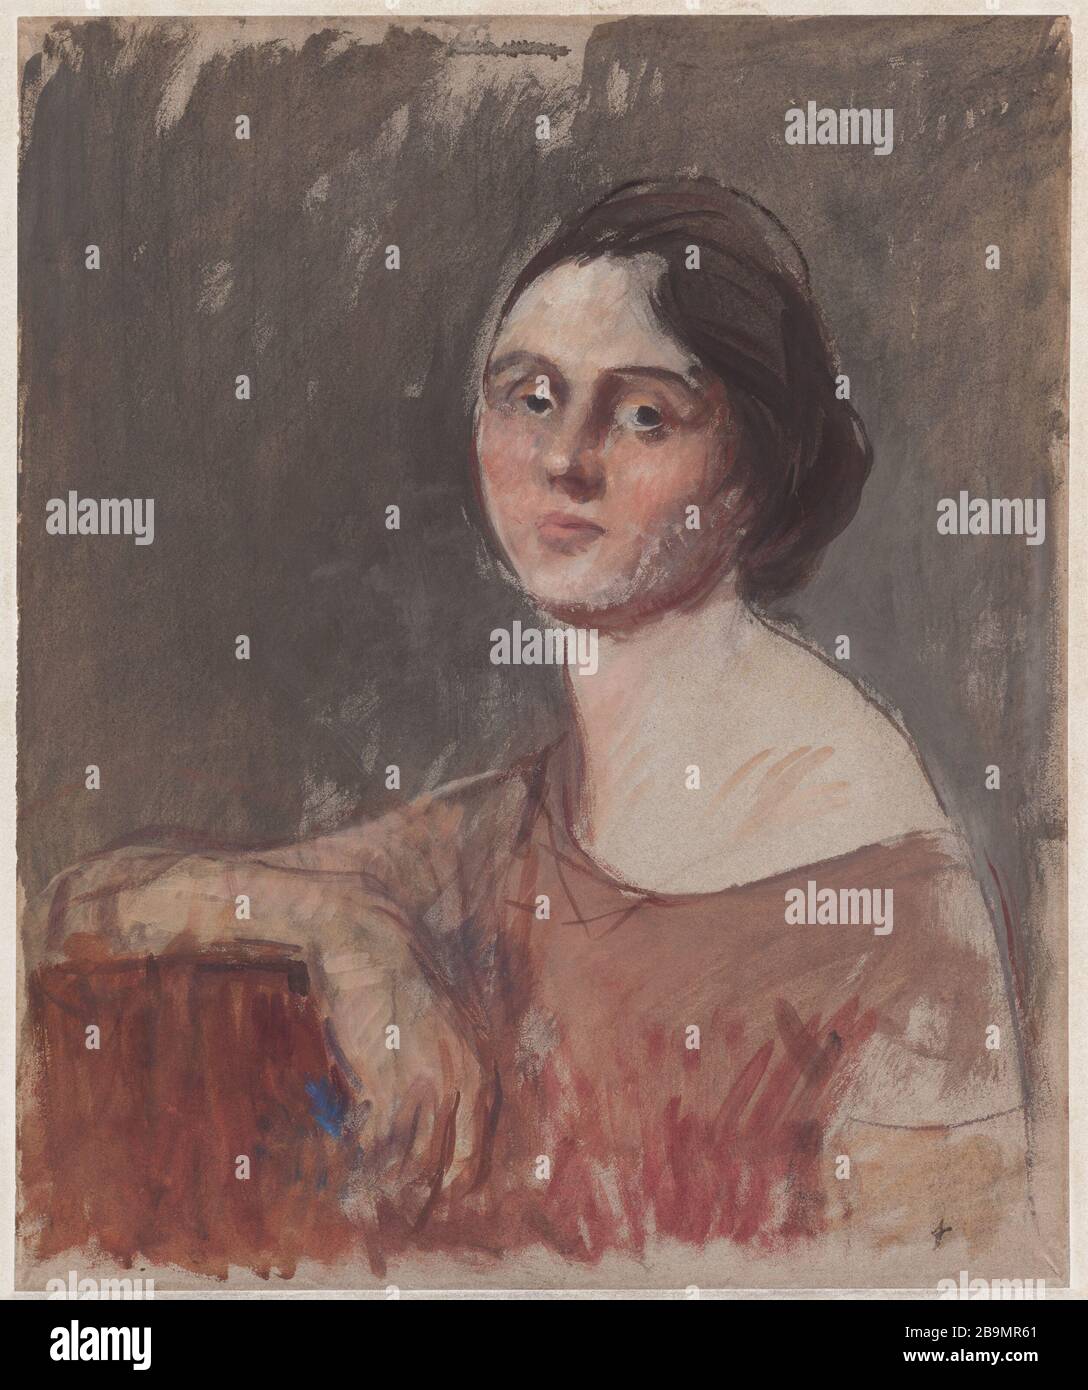 Portrait de la jeune femme dans le buste Jean-Louis Forain (1852-1931).  'Portrait de jeune femme en poste'. Huile et gouache sur papier, 1920.  Musée des Beaux-Arts de la Ville de Paris, petit